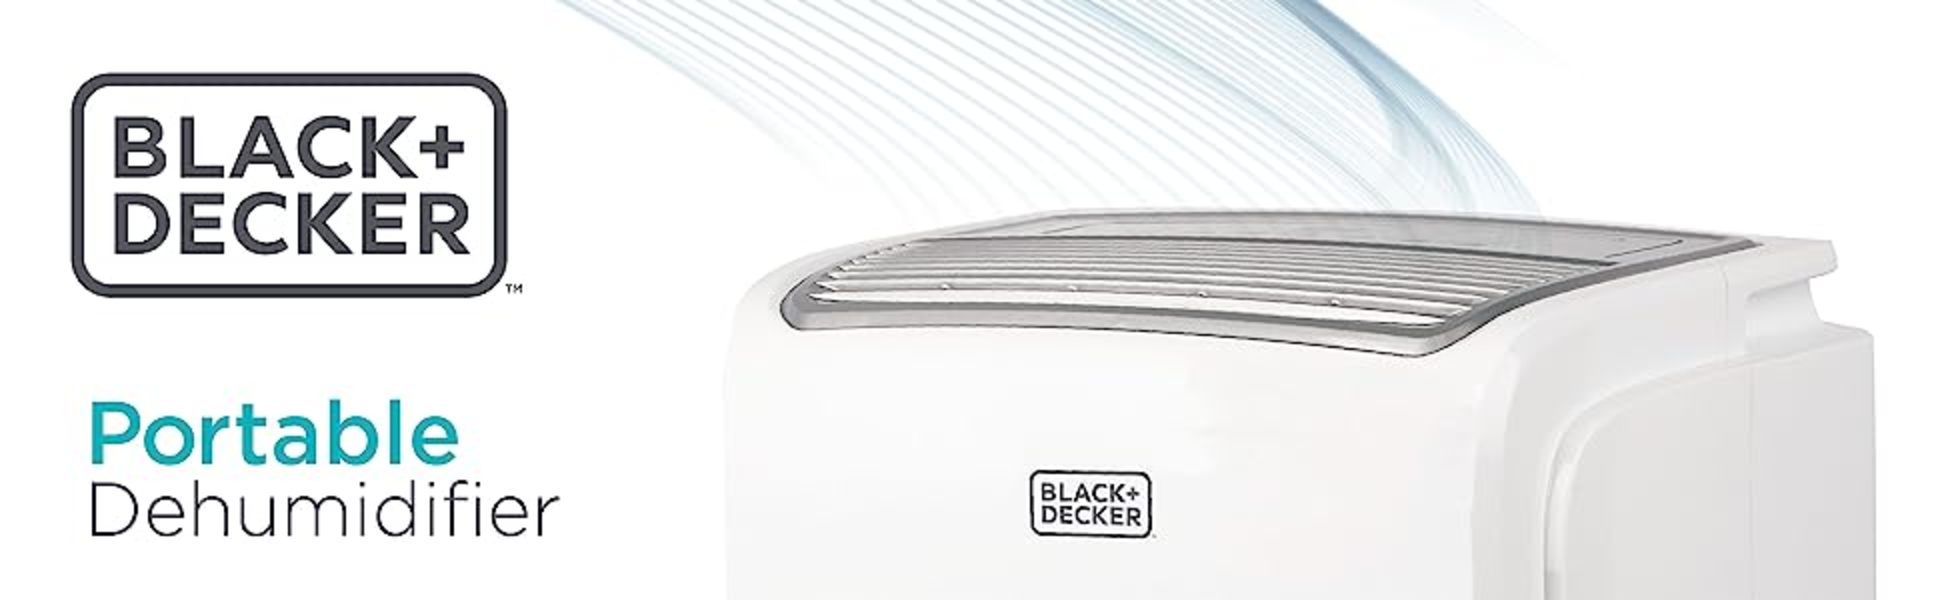 Black+decker Bd30mwsa 30-Pint Portable Dehumidifier